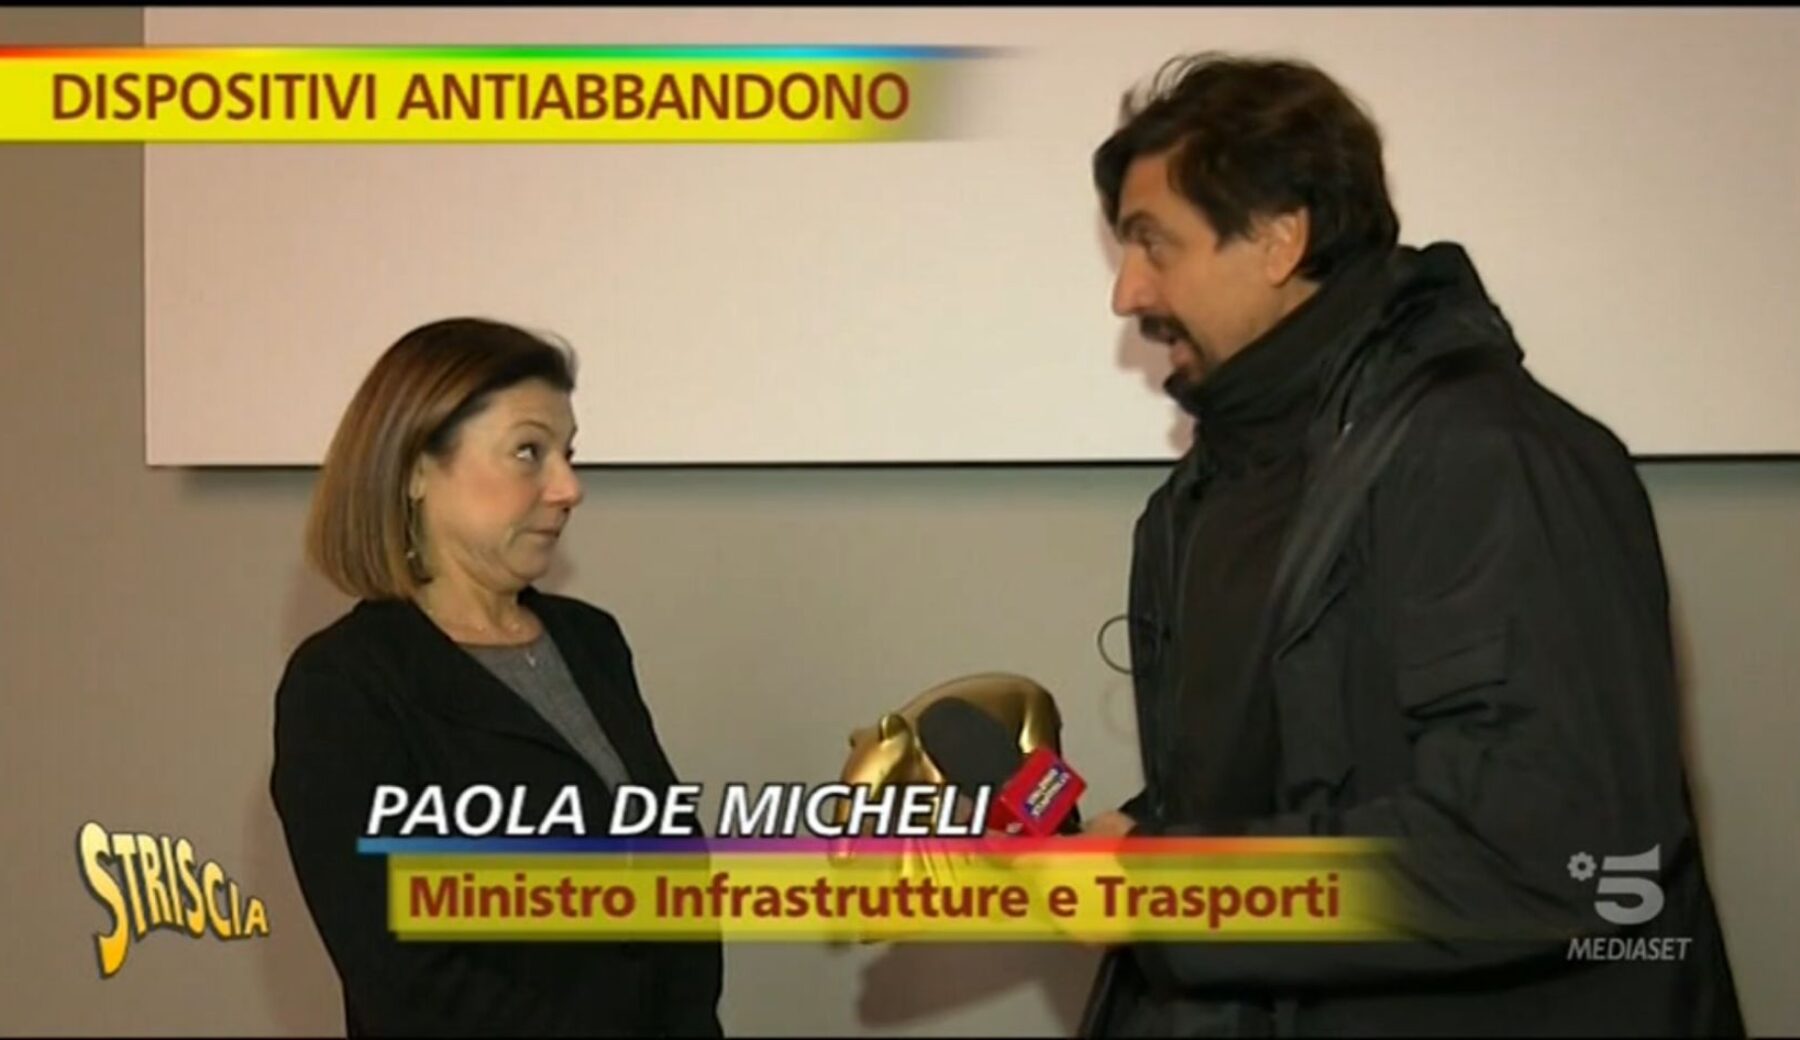 Paola De Micheli, democratica e (due volte) attapparita